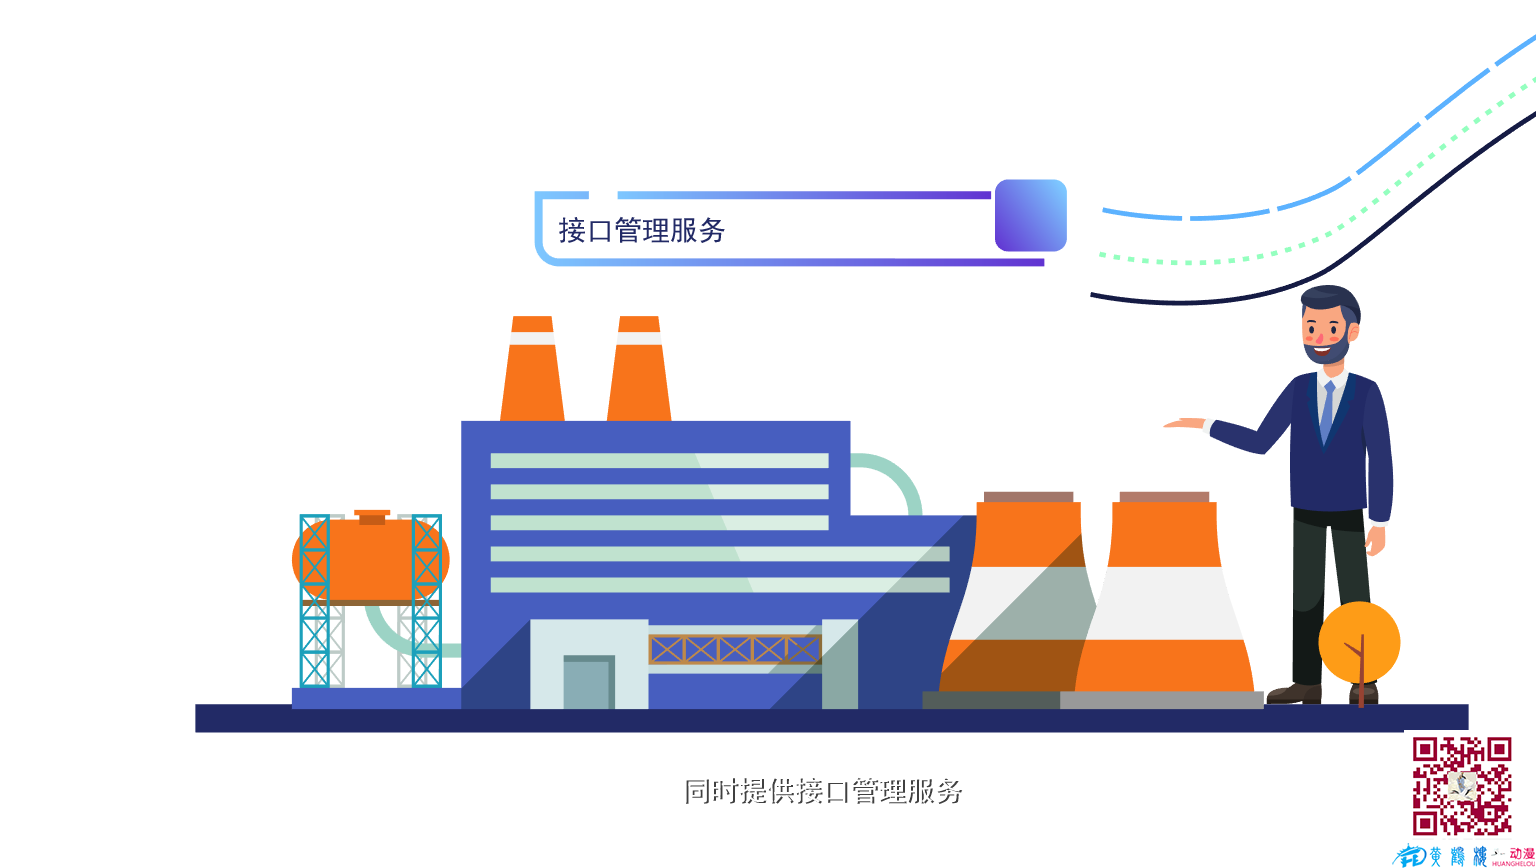 武汉mg动画制作《东风标识解析》彩稿动画分镜头设计